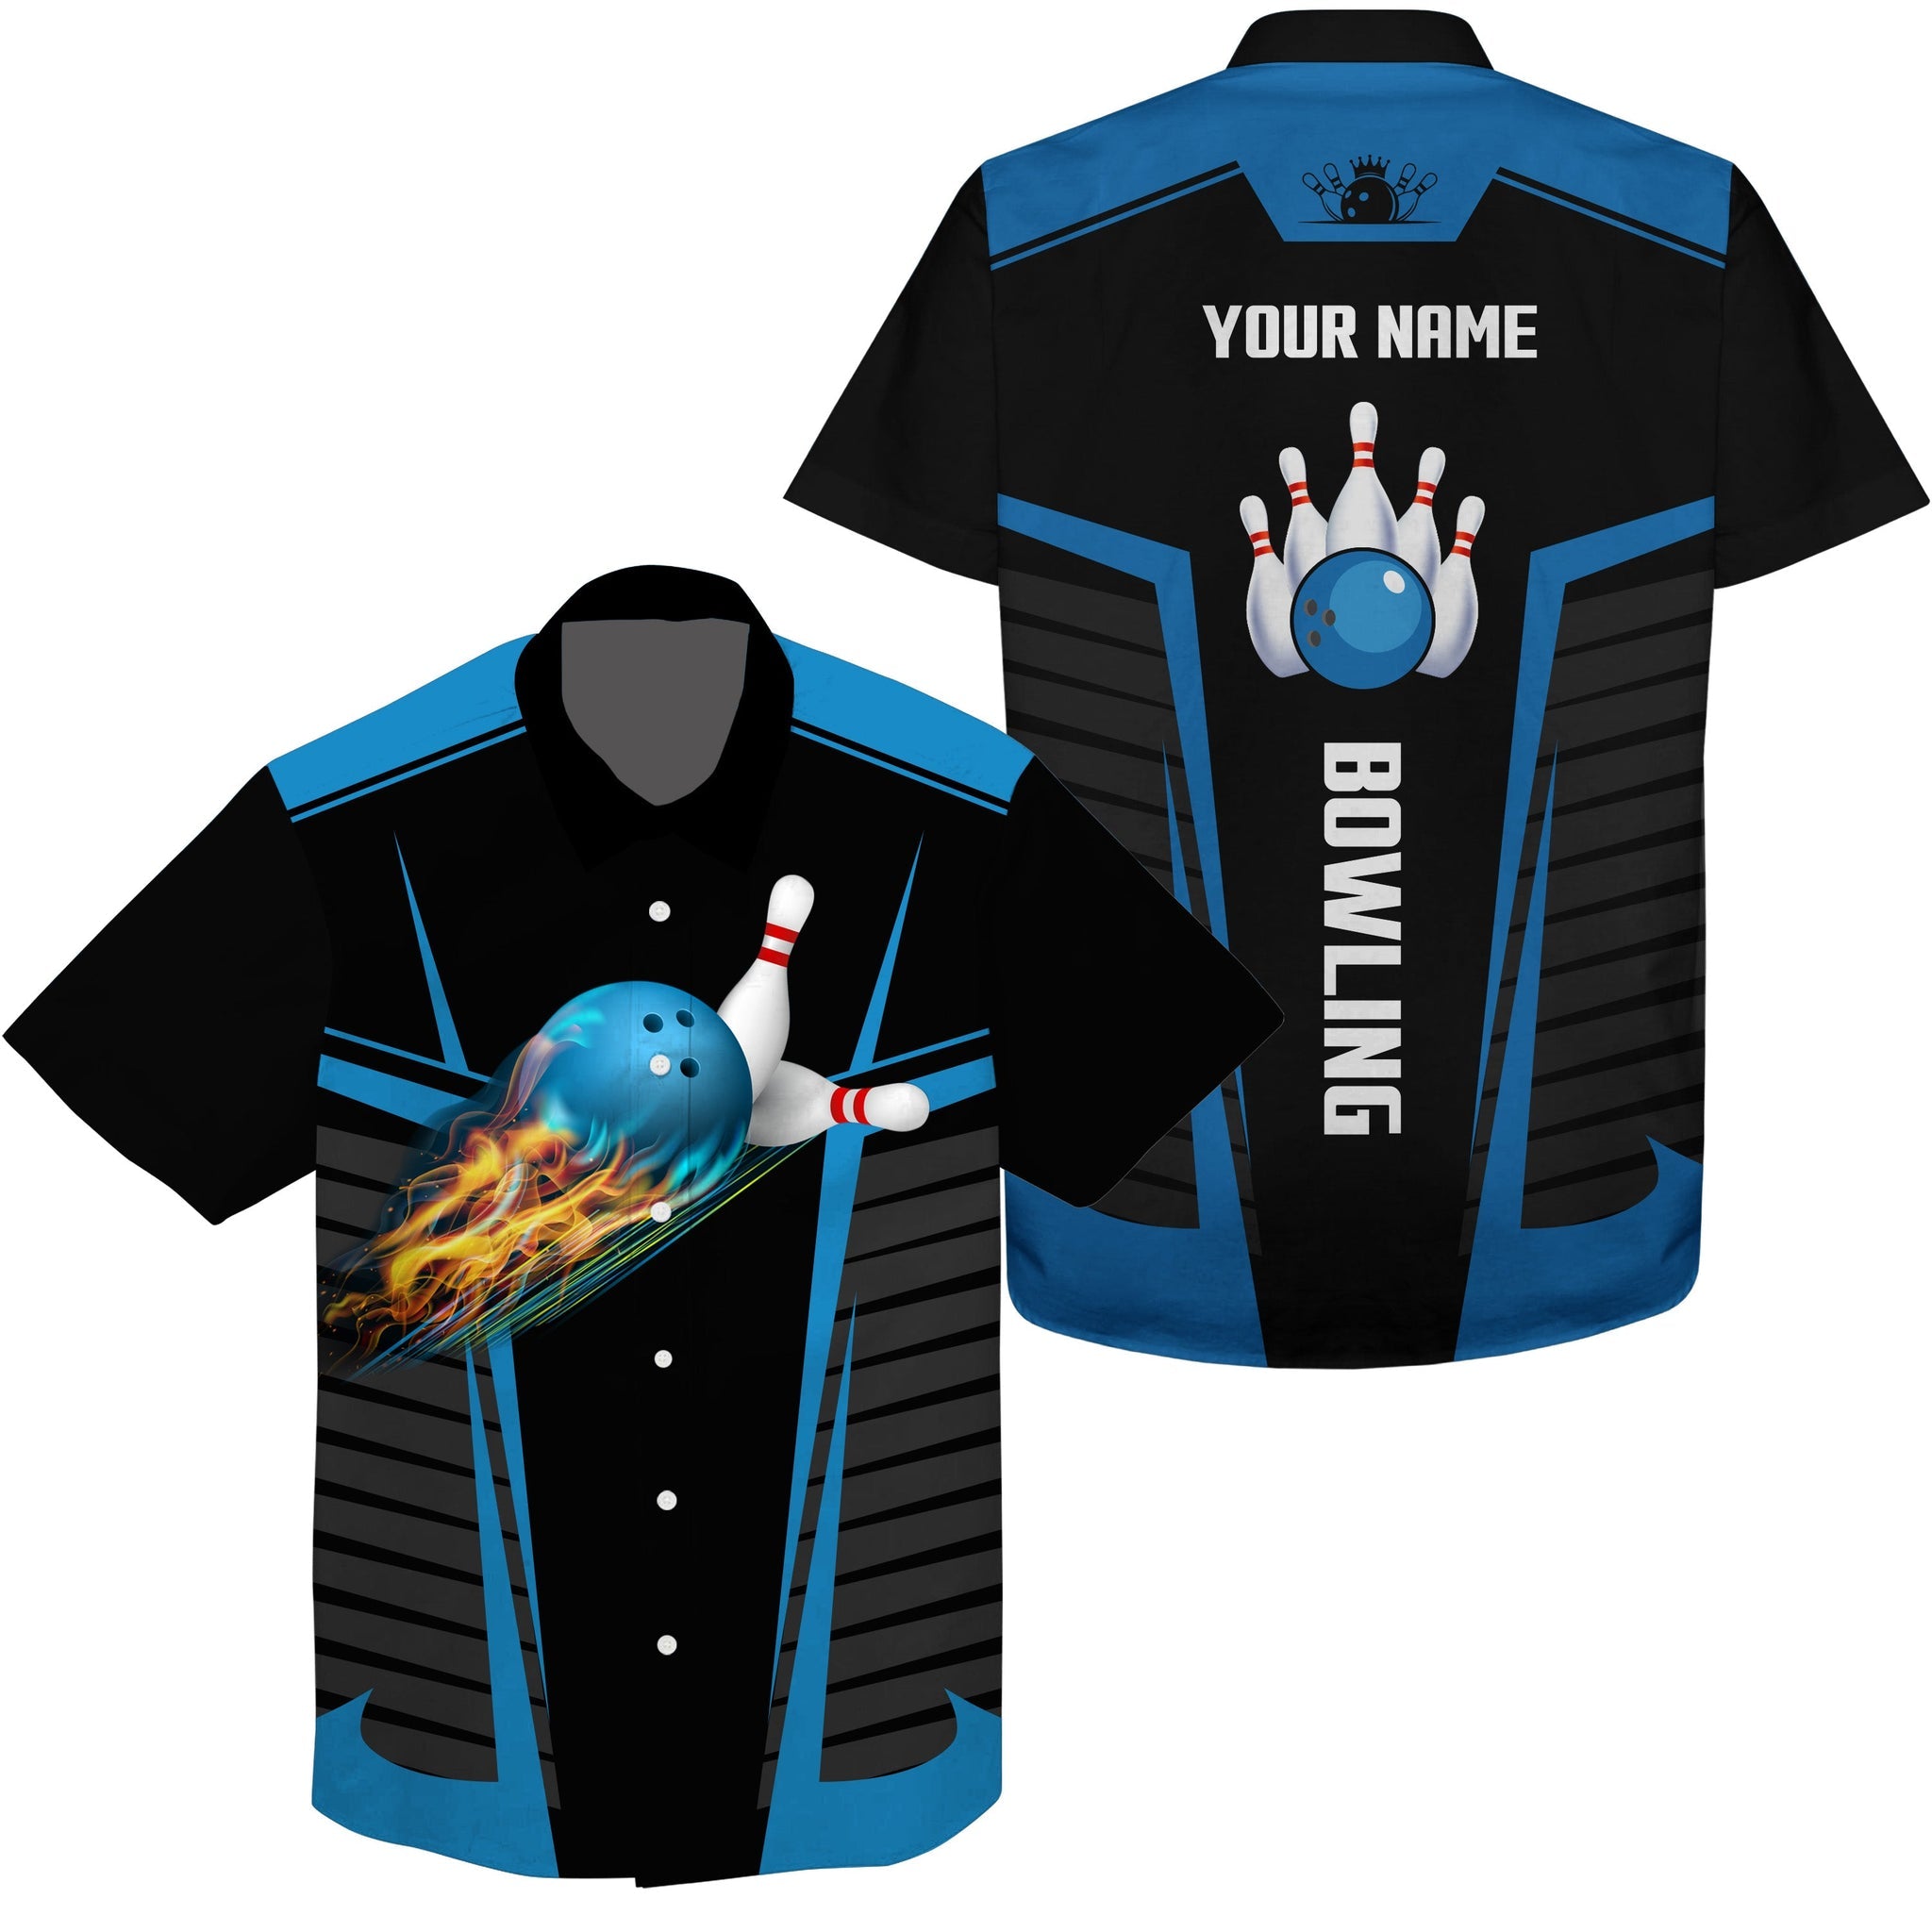 Customize Hawaiian Bowling Shirts With Flame Bowling Balls And Pins Black Blue Bowling Shirts For Men